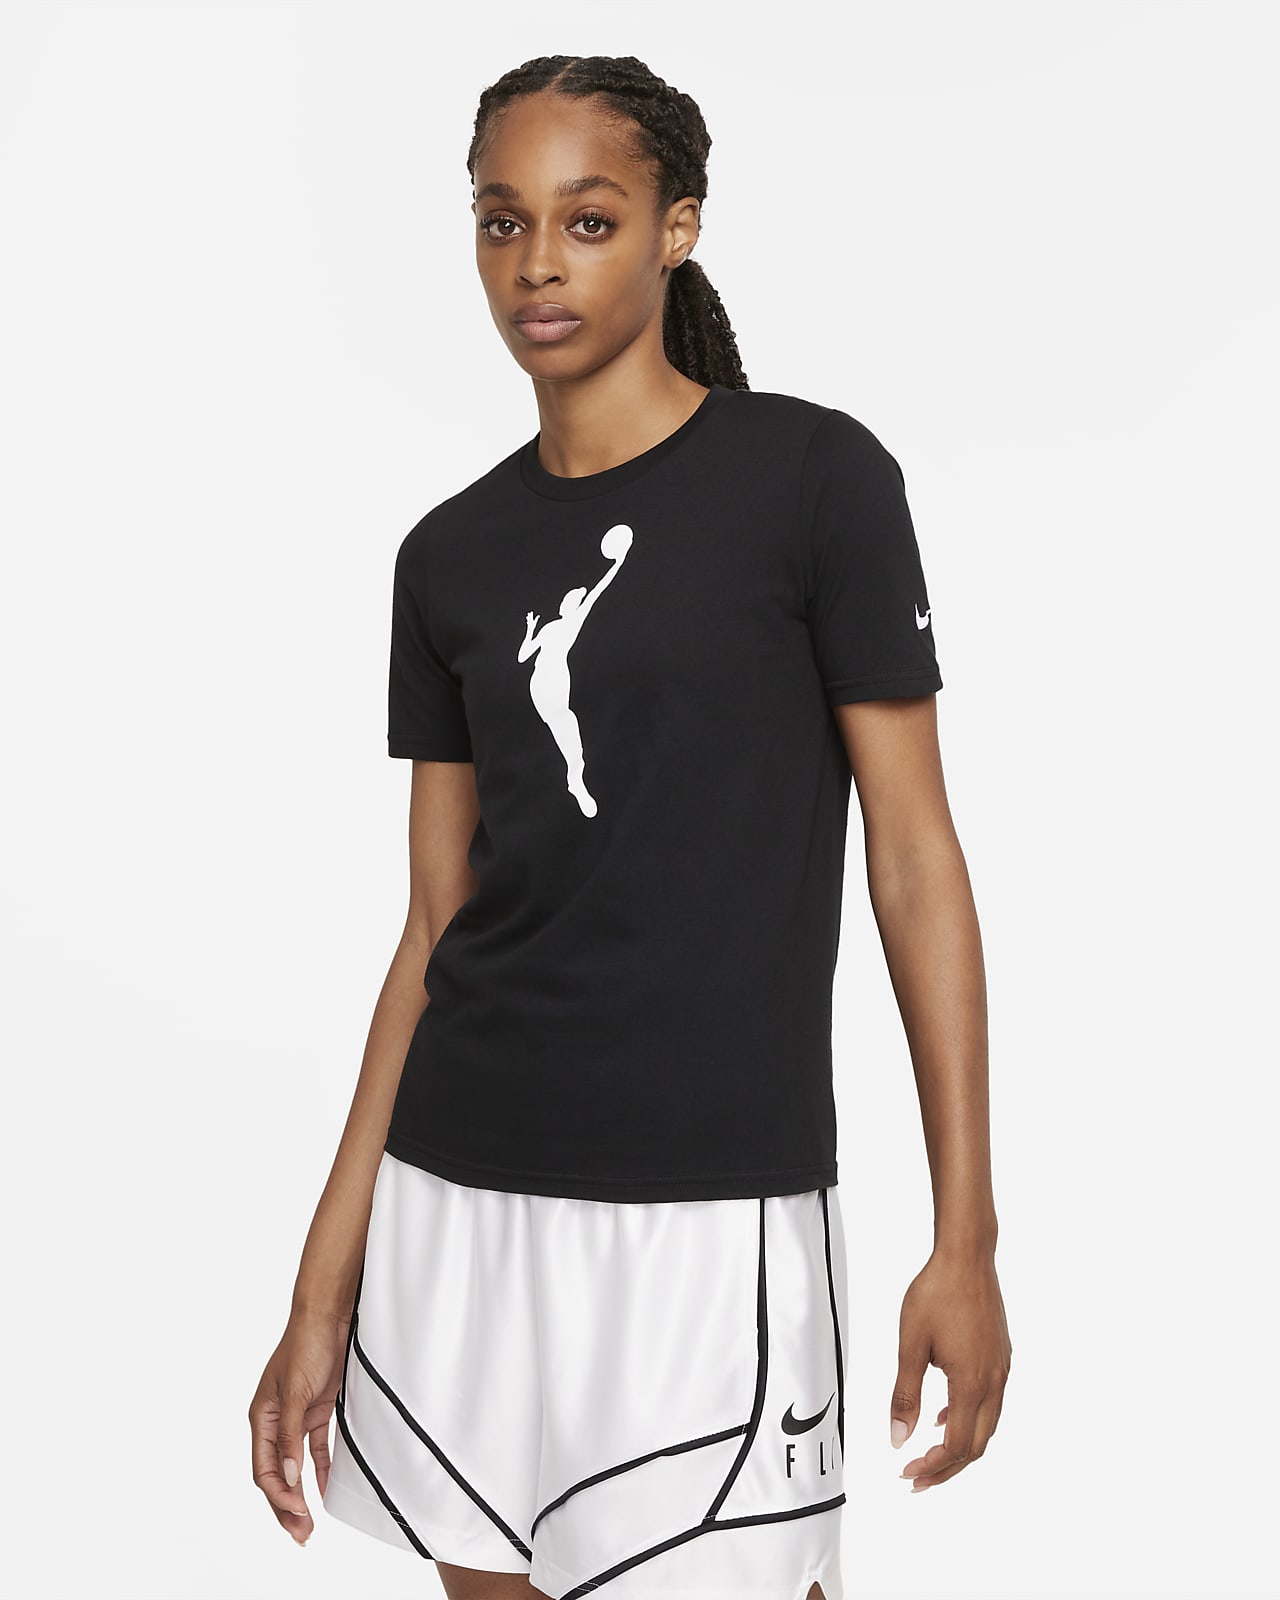 Team 13 Nike WNBA-shirt voor kids